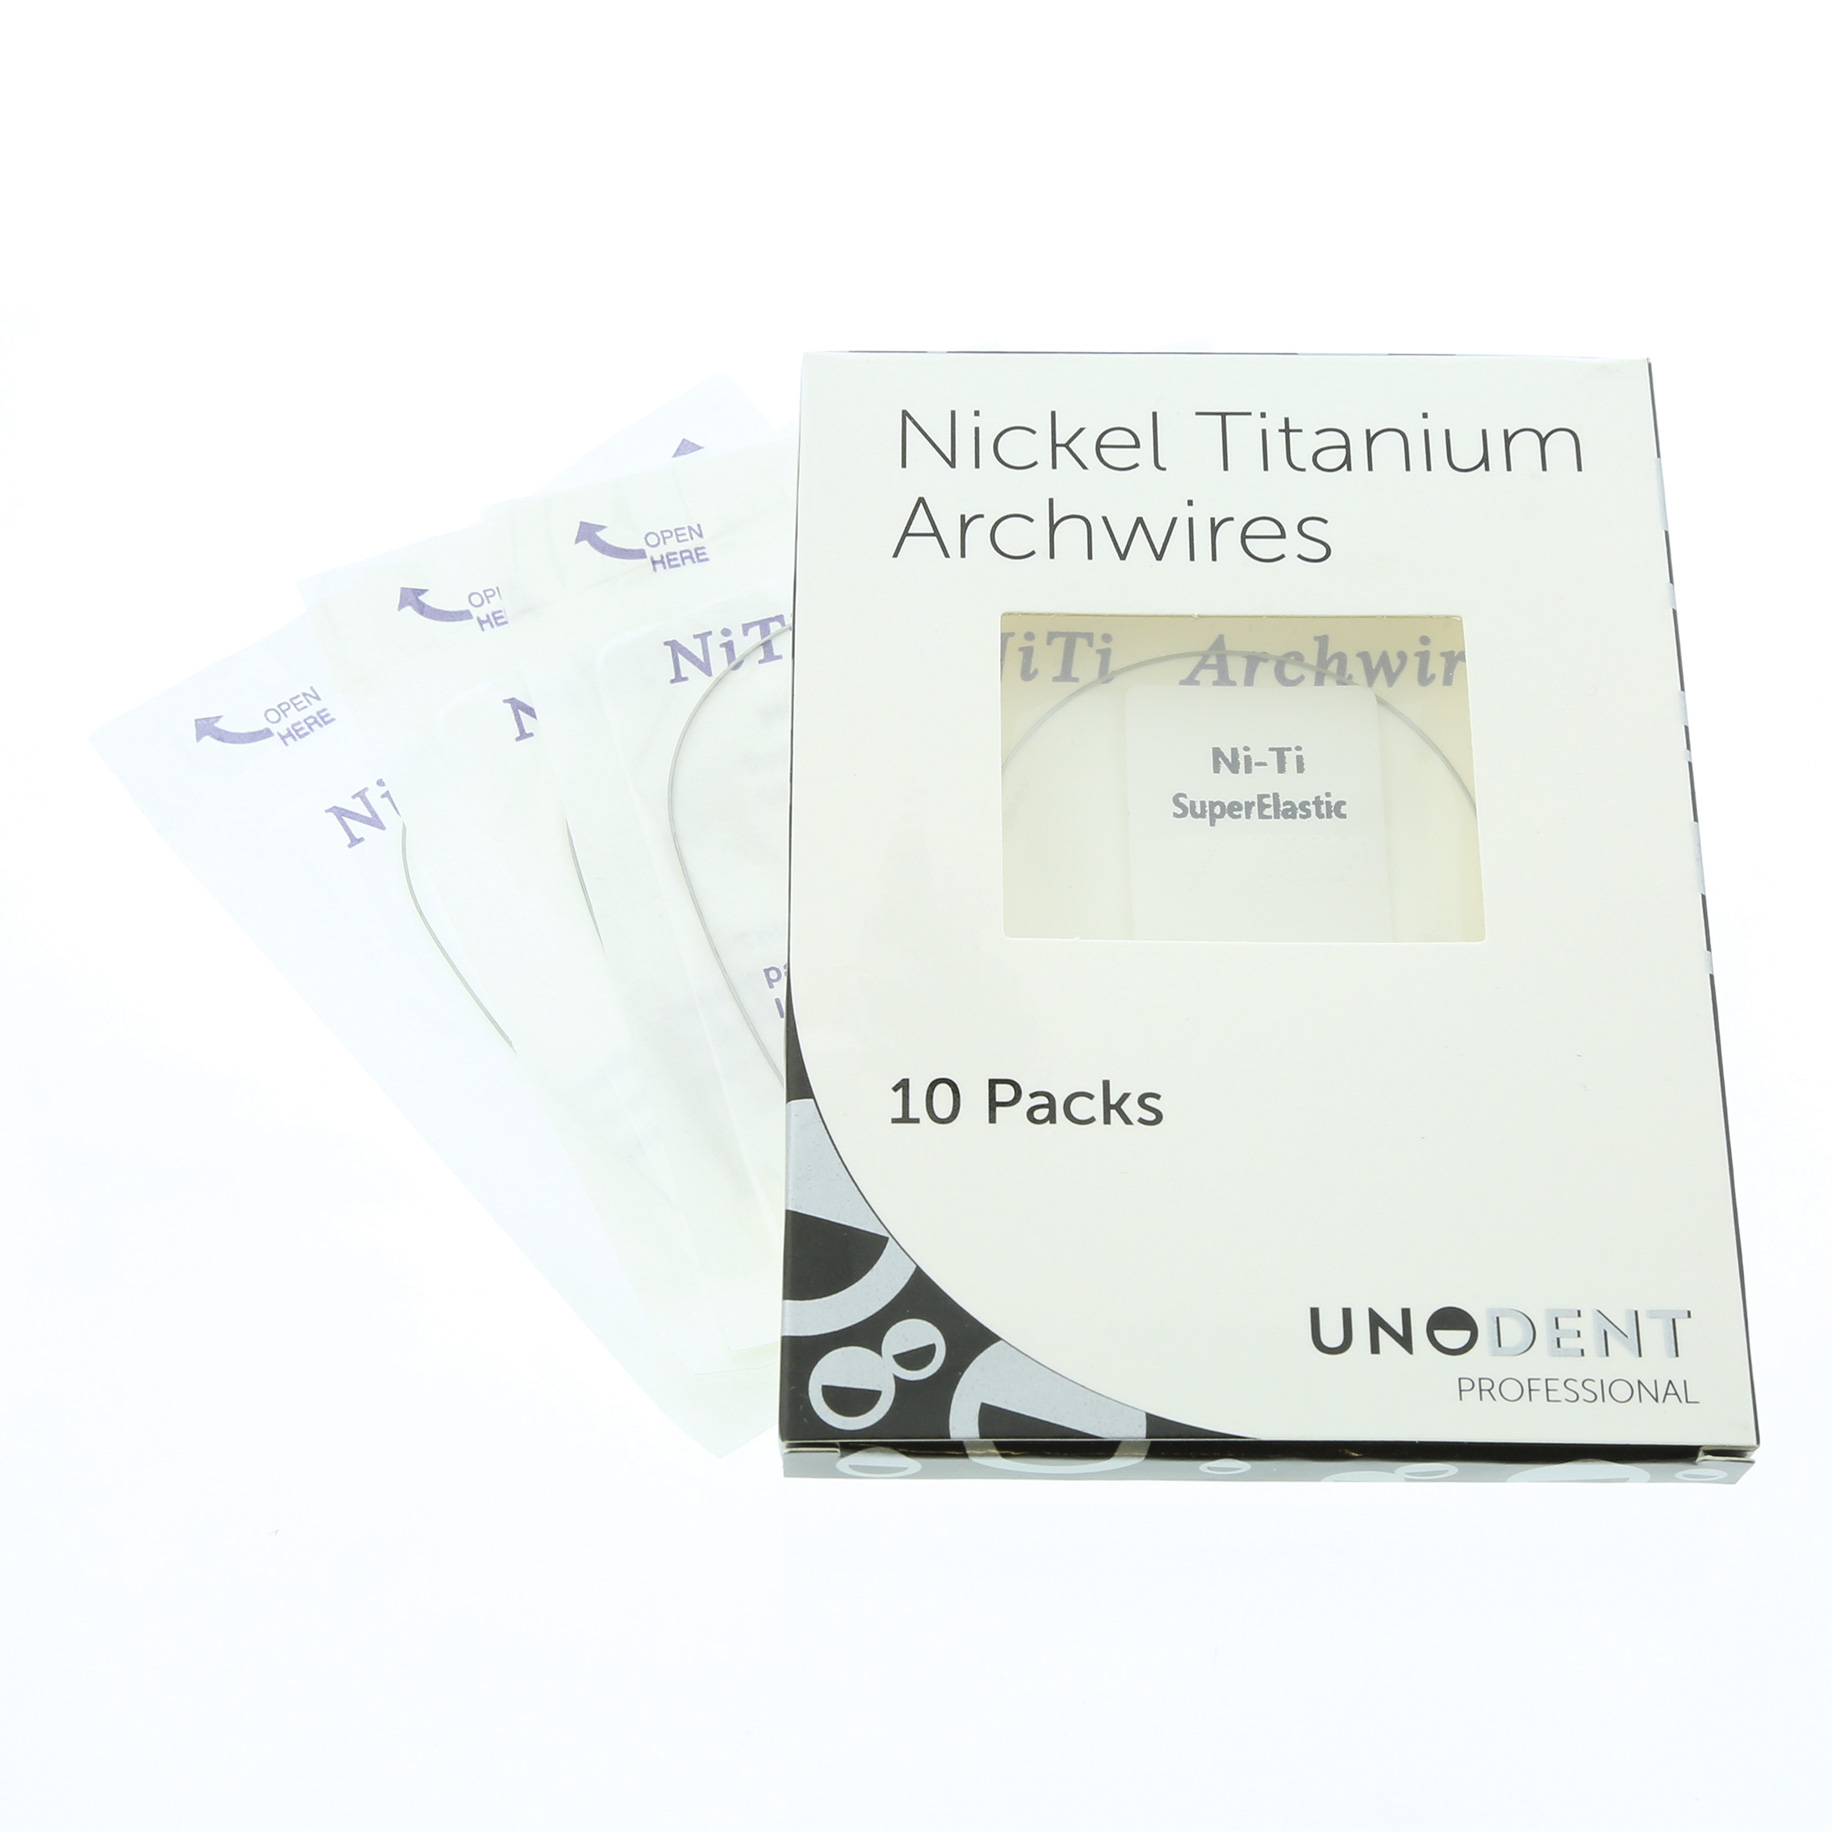 NiTi 014 Upper Natural - UNO PACK 